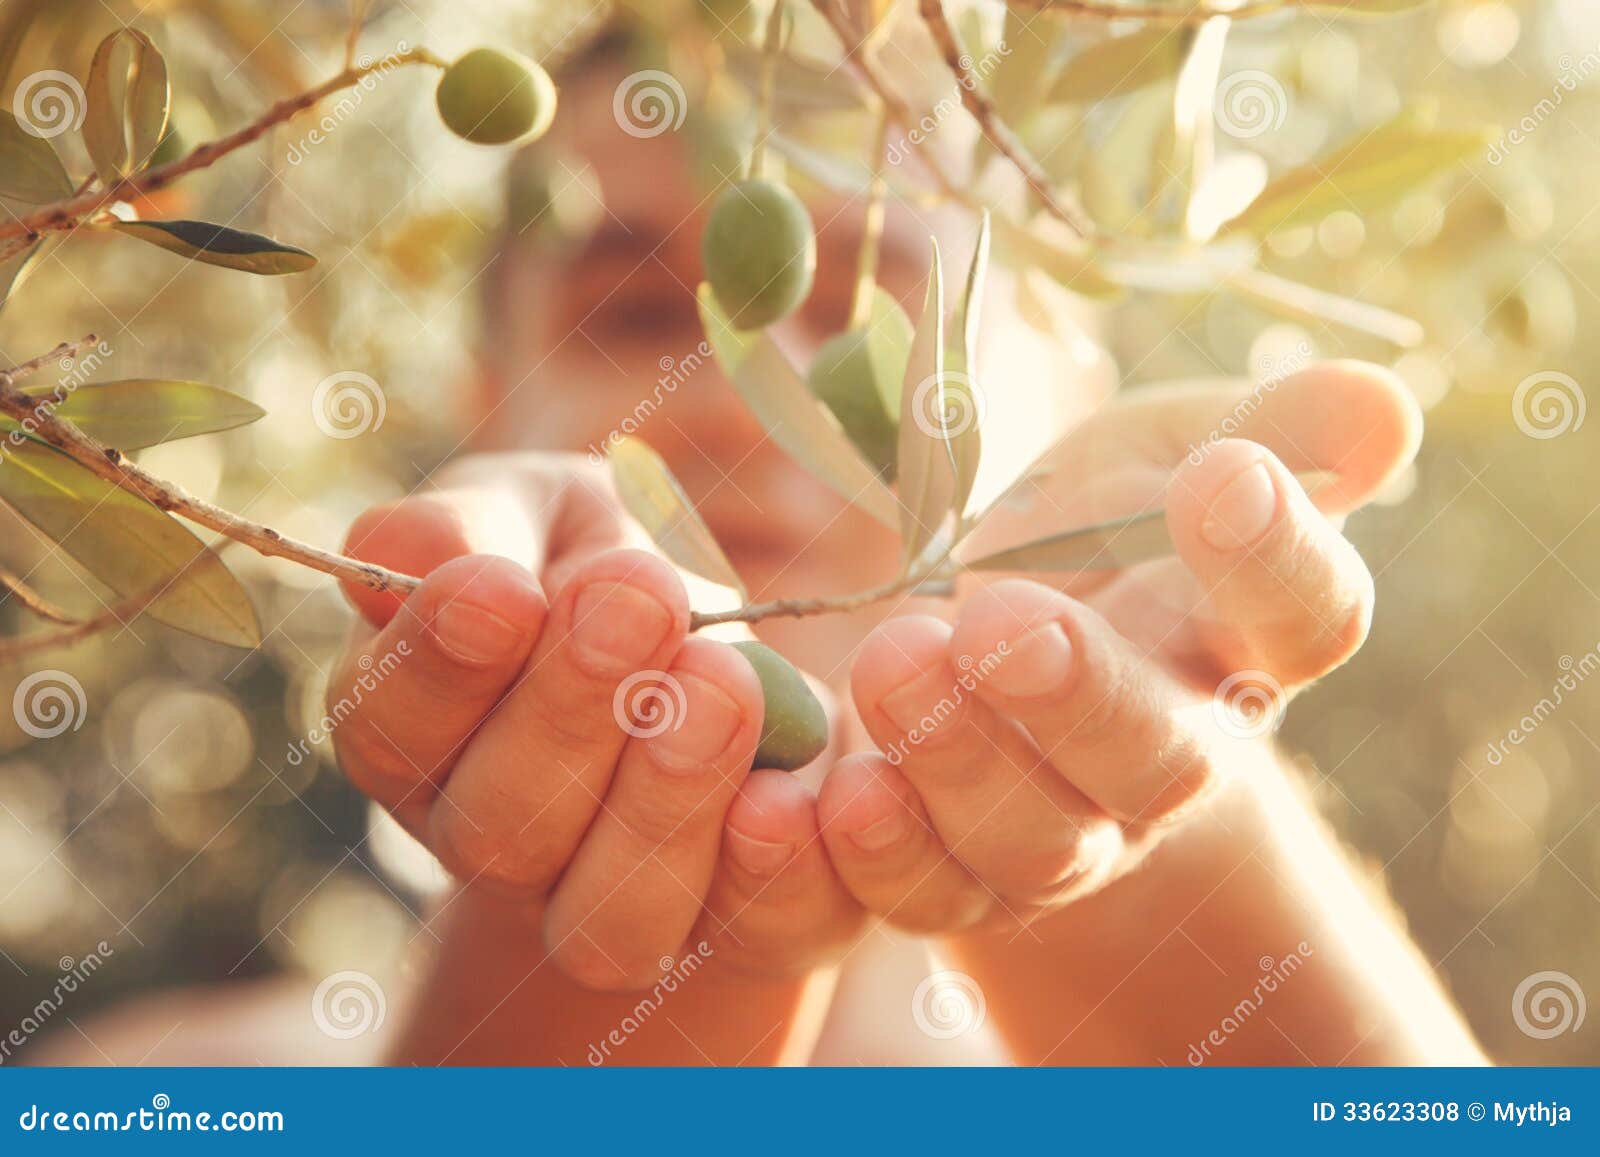 olives harvest